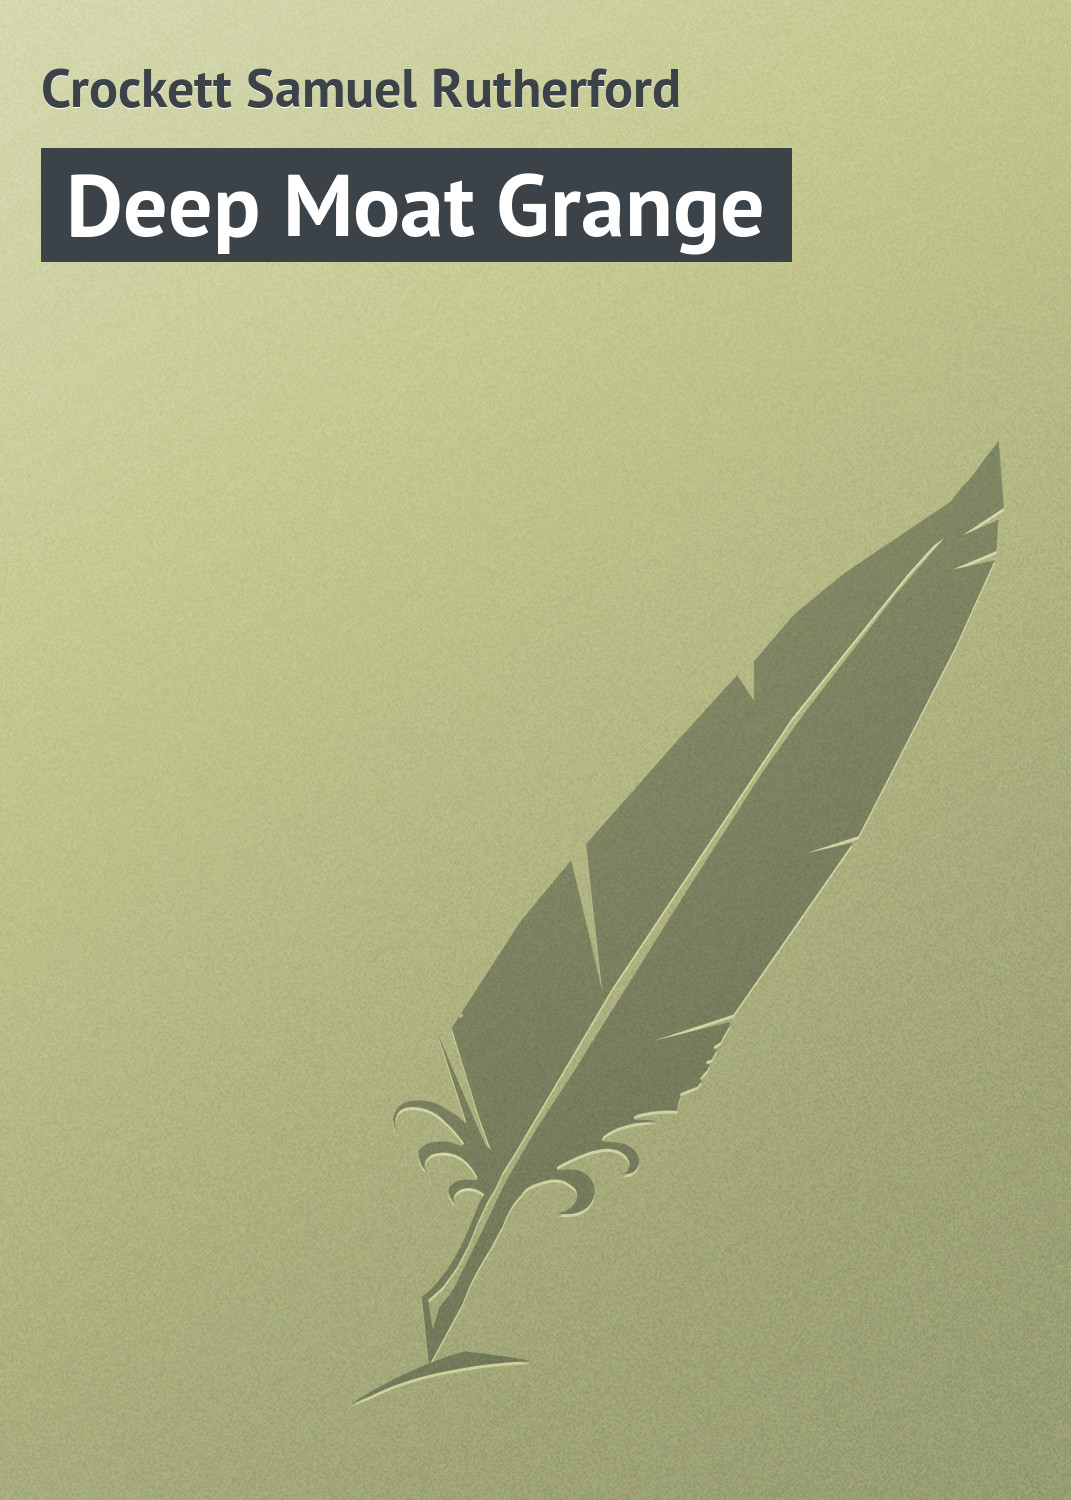 Книга Deep Moat Grange из серии , созданная Samuel Crockett, может относится к жанру Зарубежная классика. Стоимость электронной книги Deep Moat Grange с идентификатором 23165427 составляет 5.99 руб.